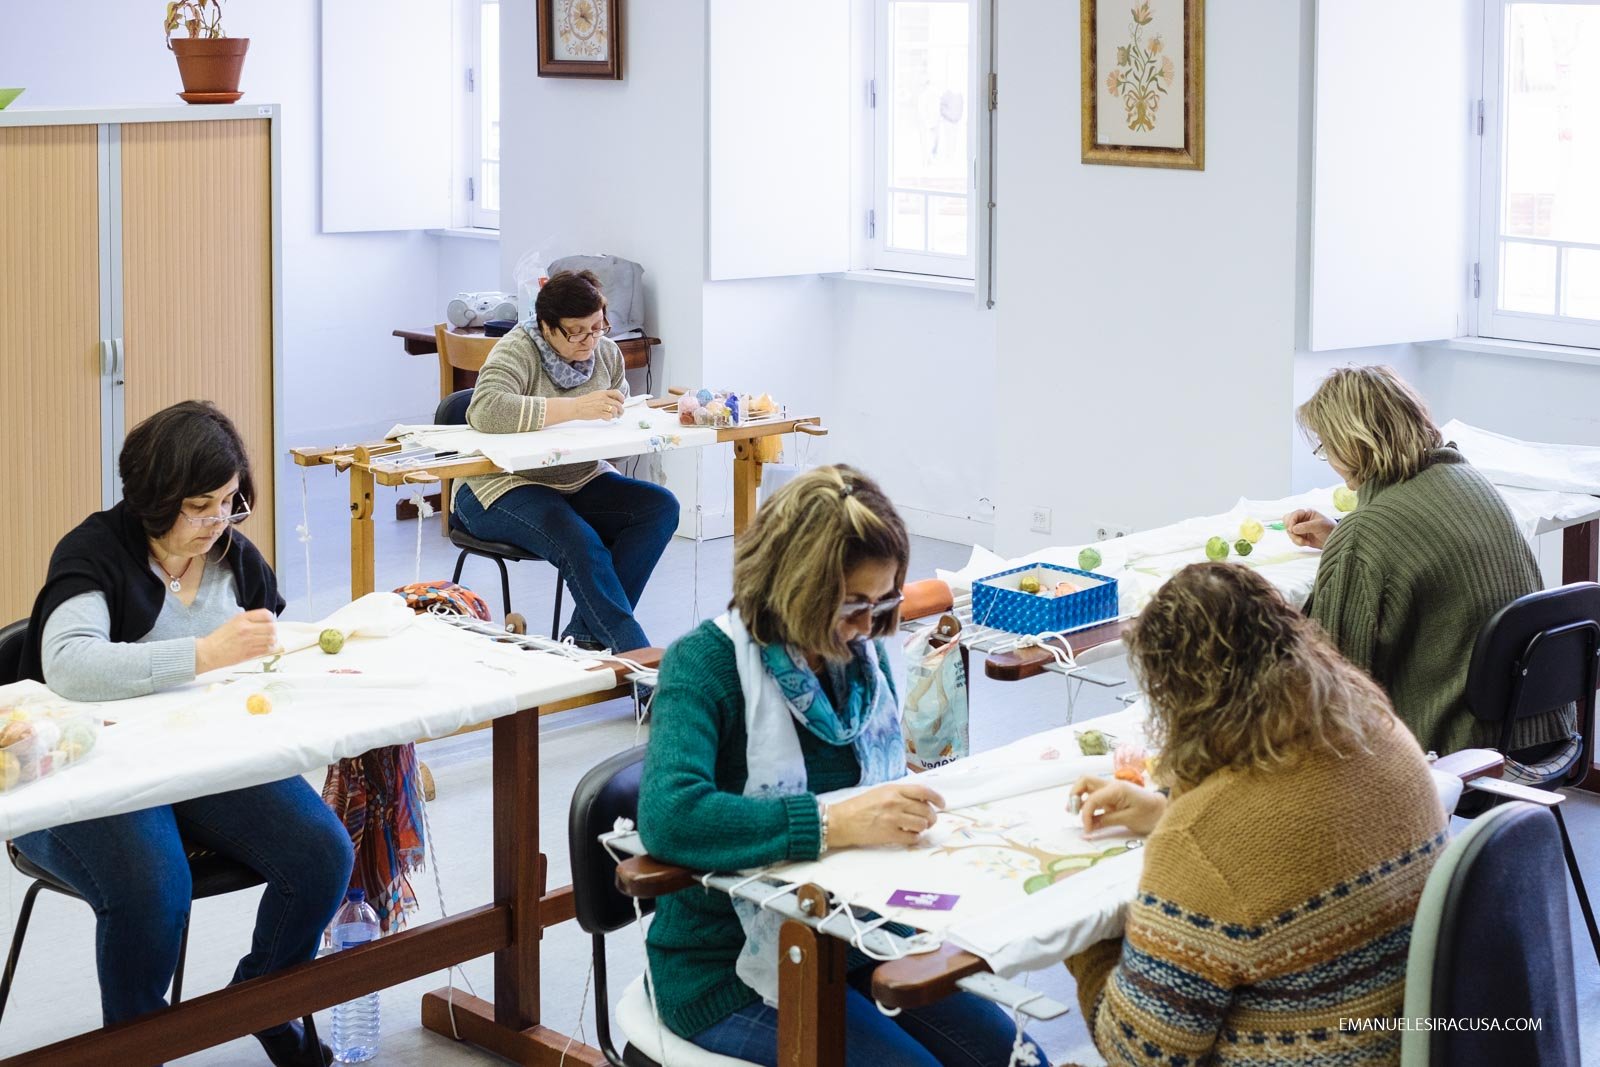 Bordados de Castelo Branco Embroidery Factory, Castelo Branco, 2016 - photo by Emanuele Siracusa for Nelson Carvalheiro Travel & Food and Centro de Portugal